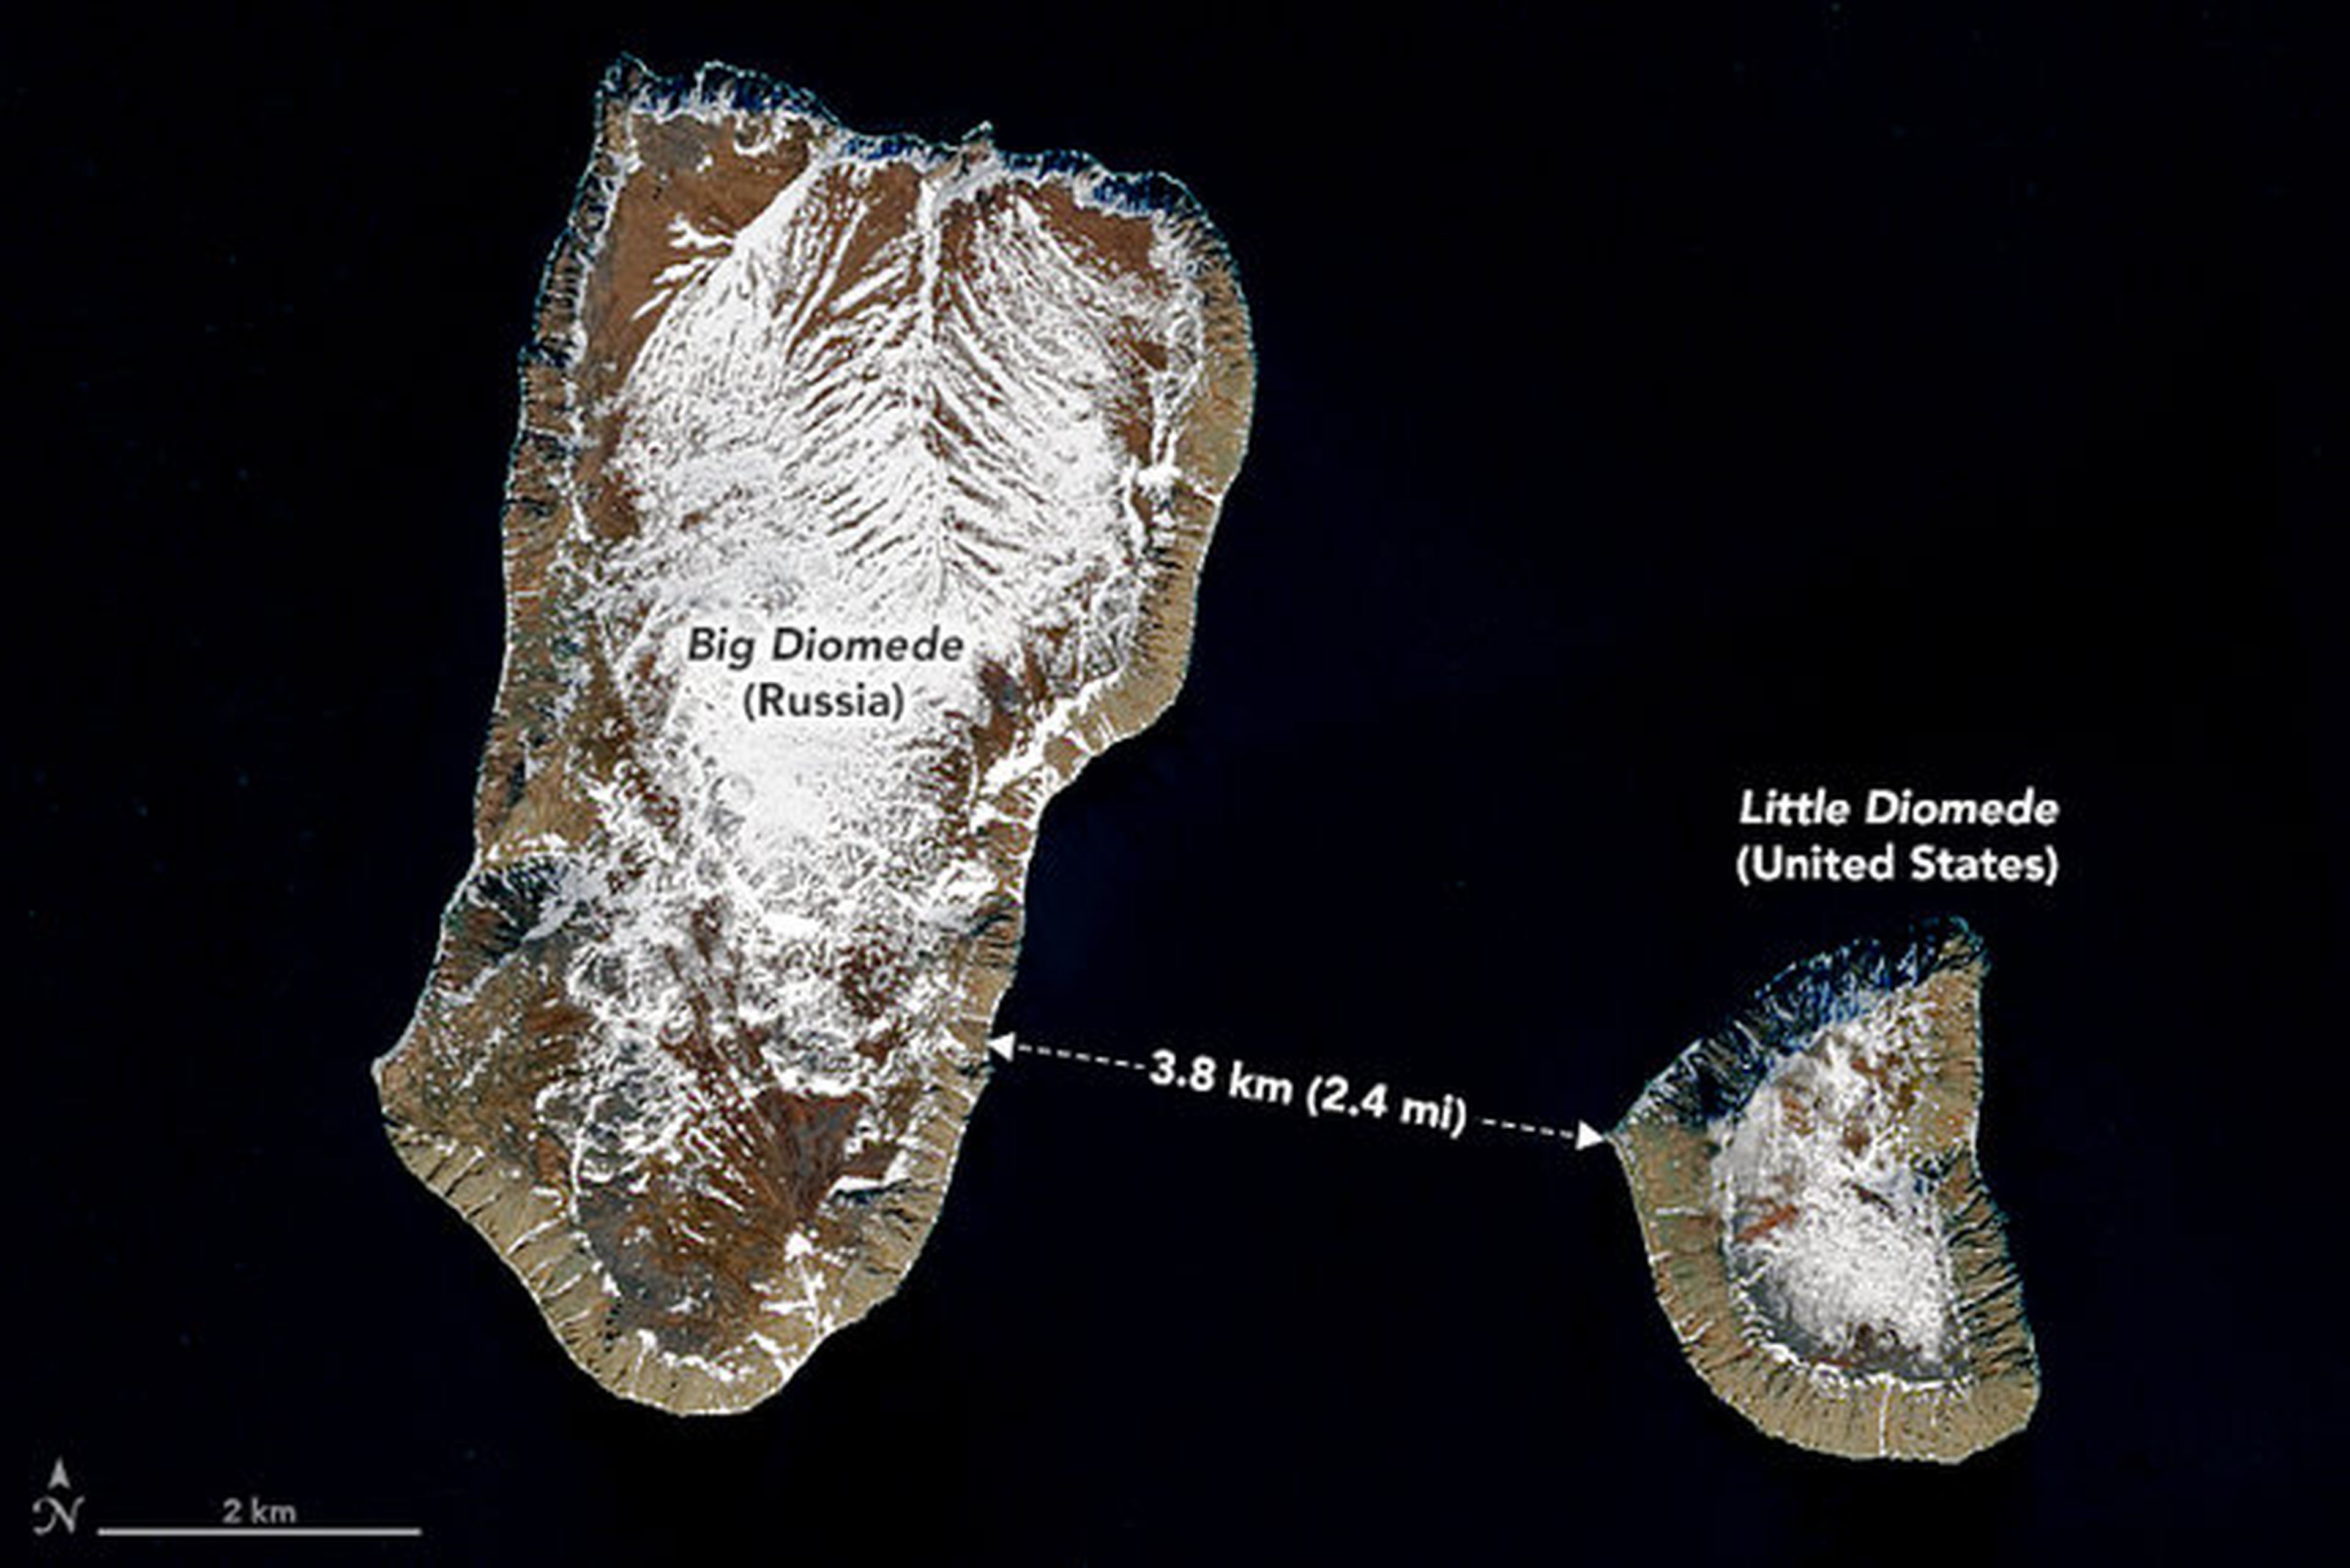 Las Islas Diomede consisten en dos islas, una es parte de Rusia y la otra es parte de los Estados Unidos.